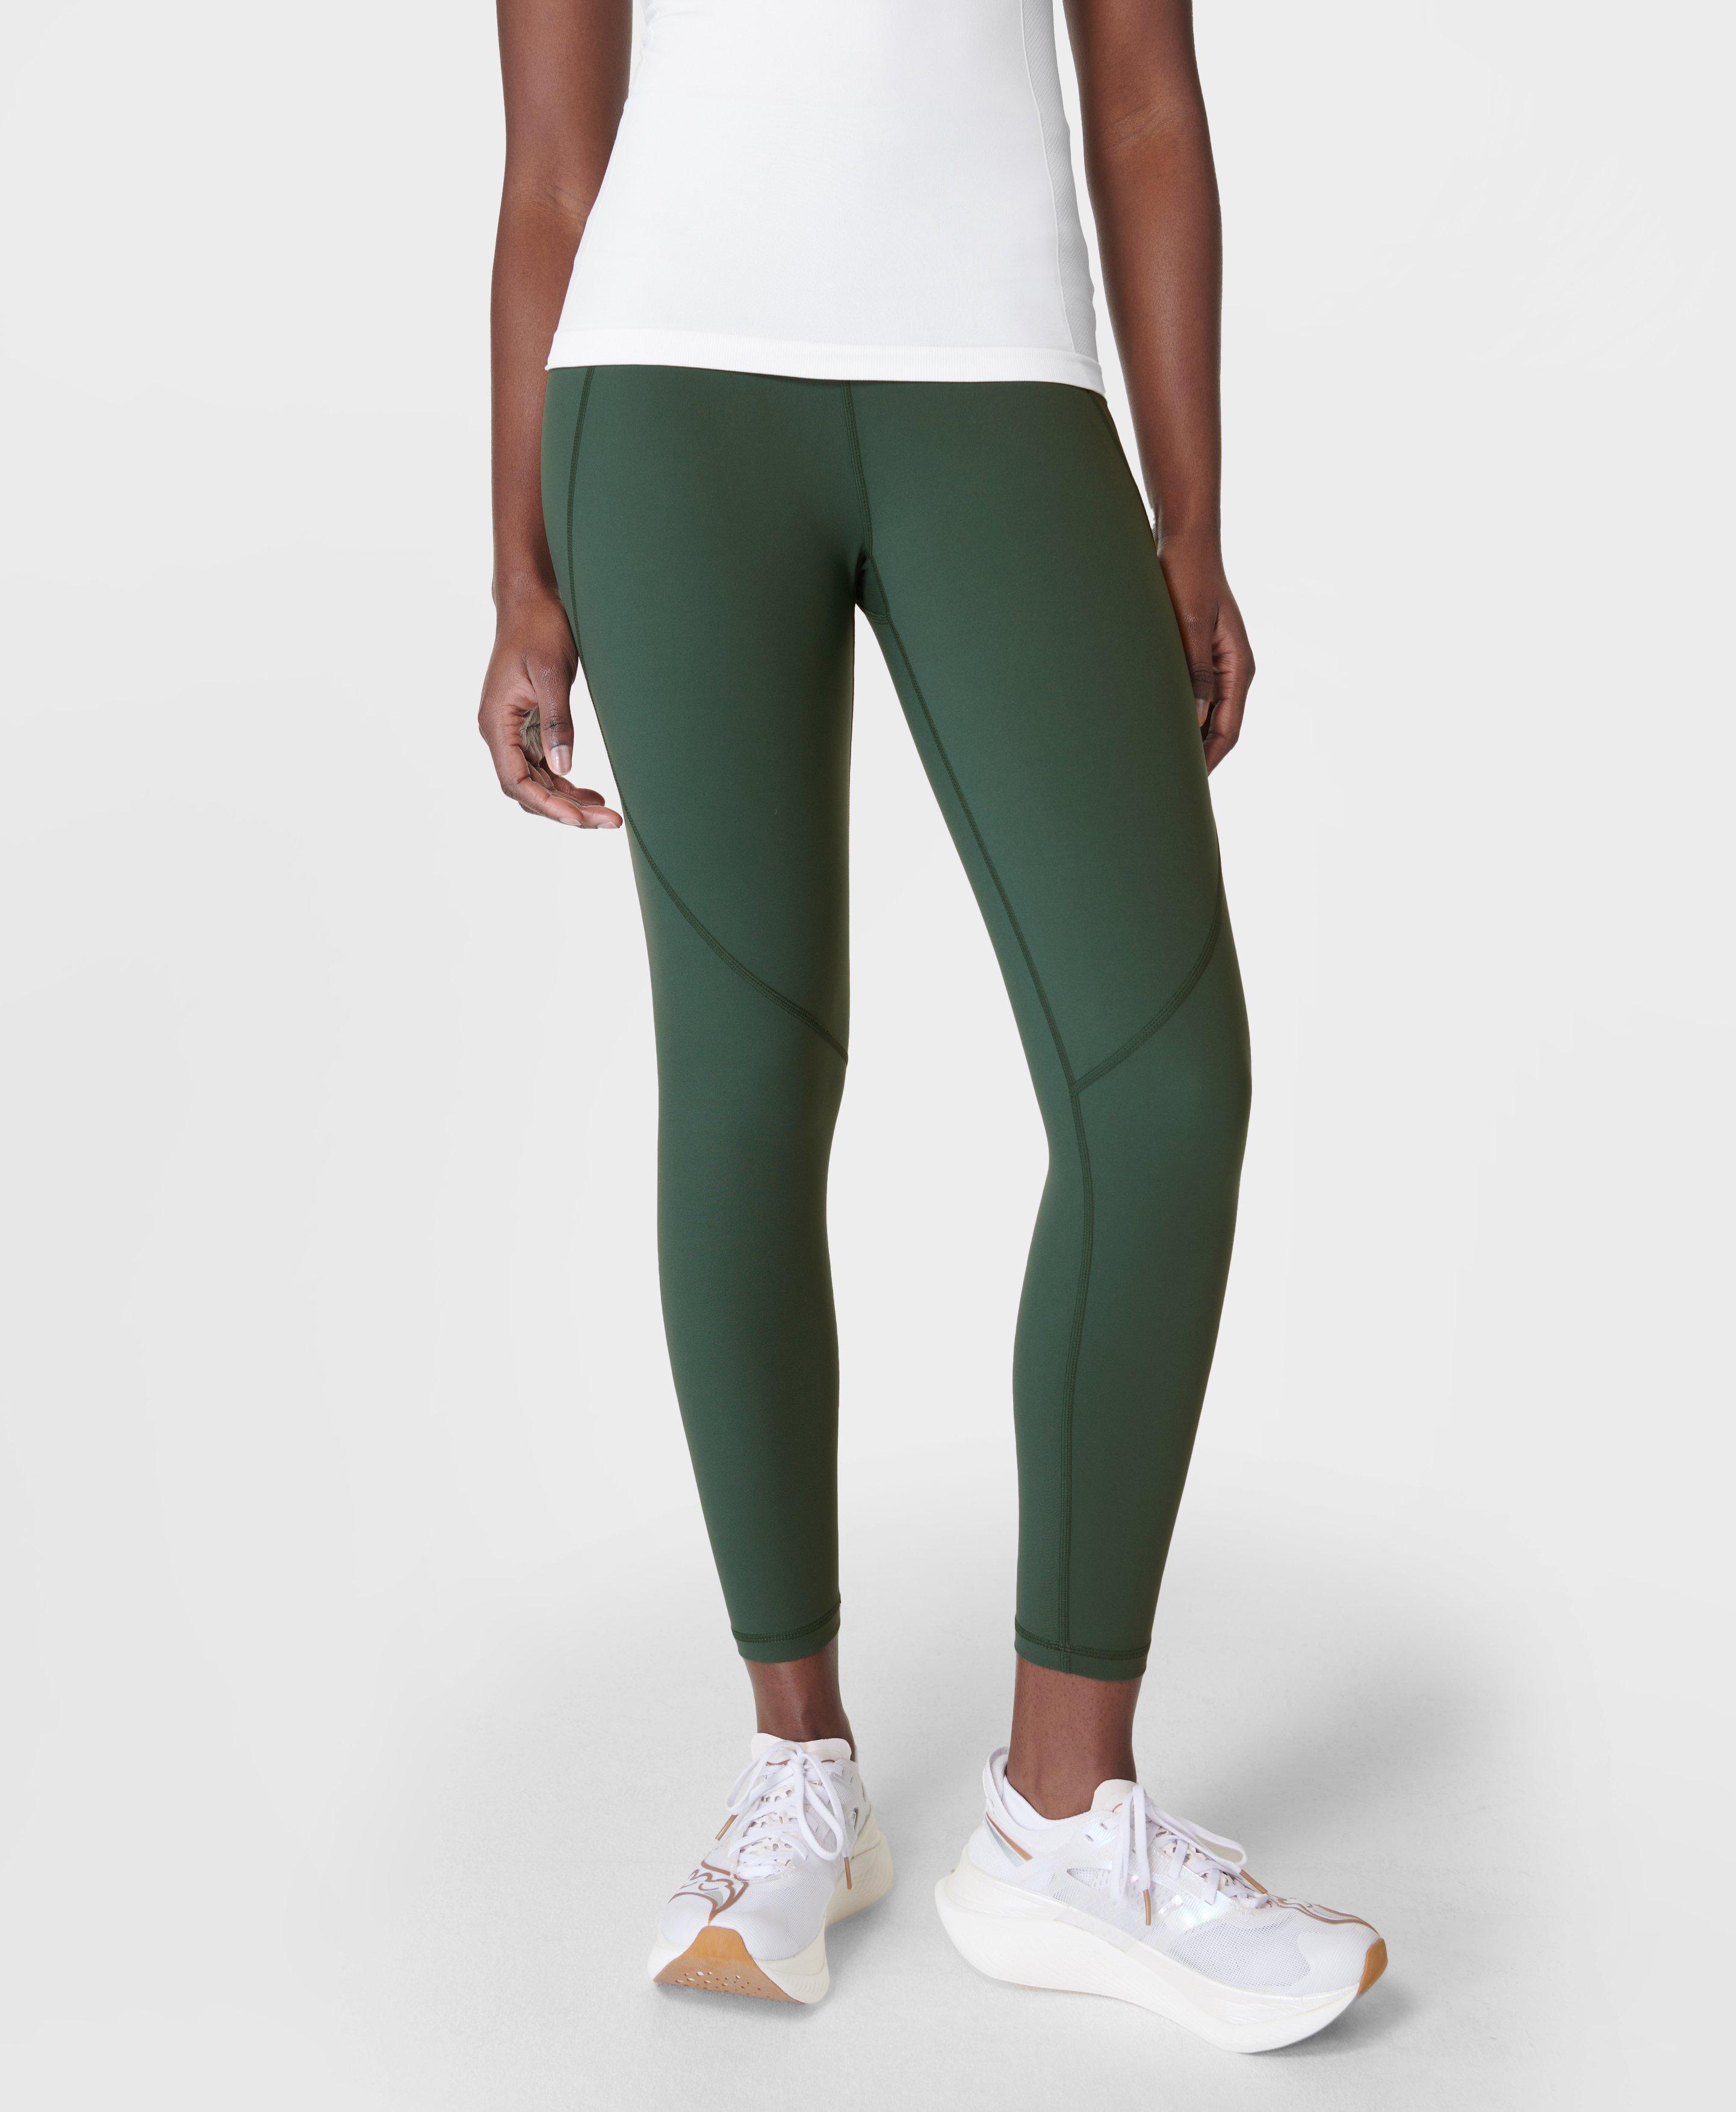 Power 7/8 Workout Leggings - Trek Green, Women's Leggings